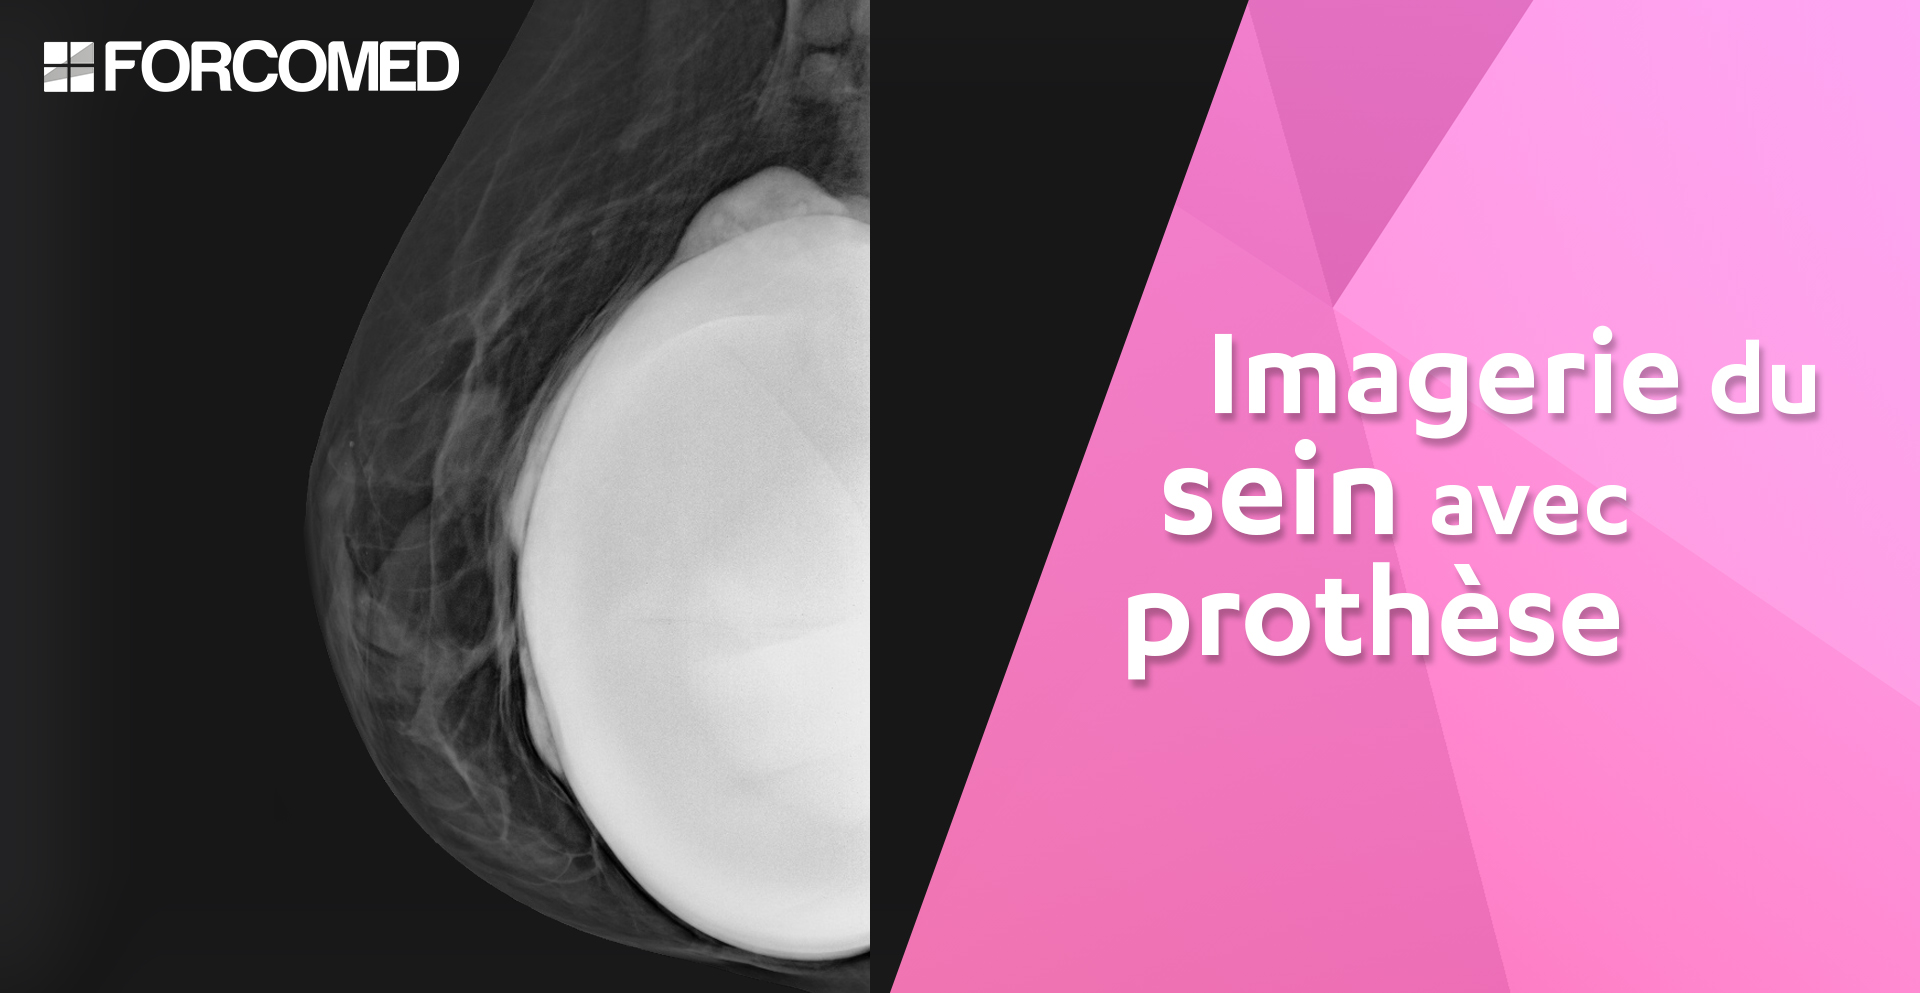 Imagerie du sein avec prothèse